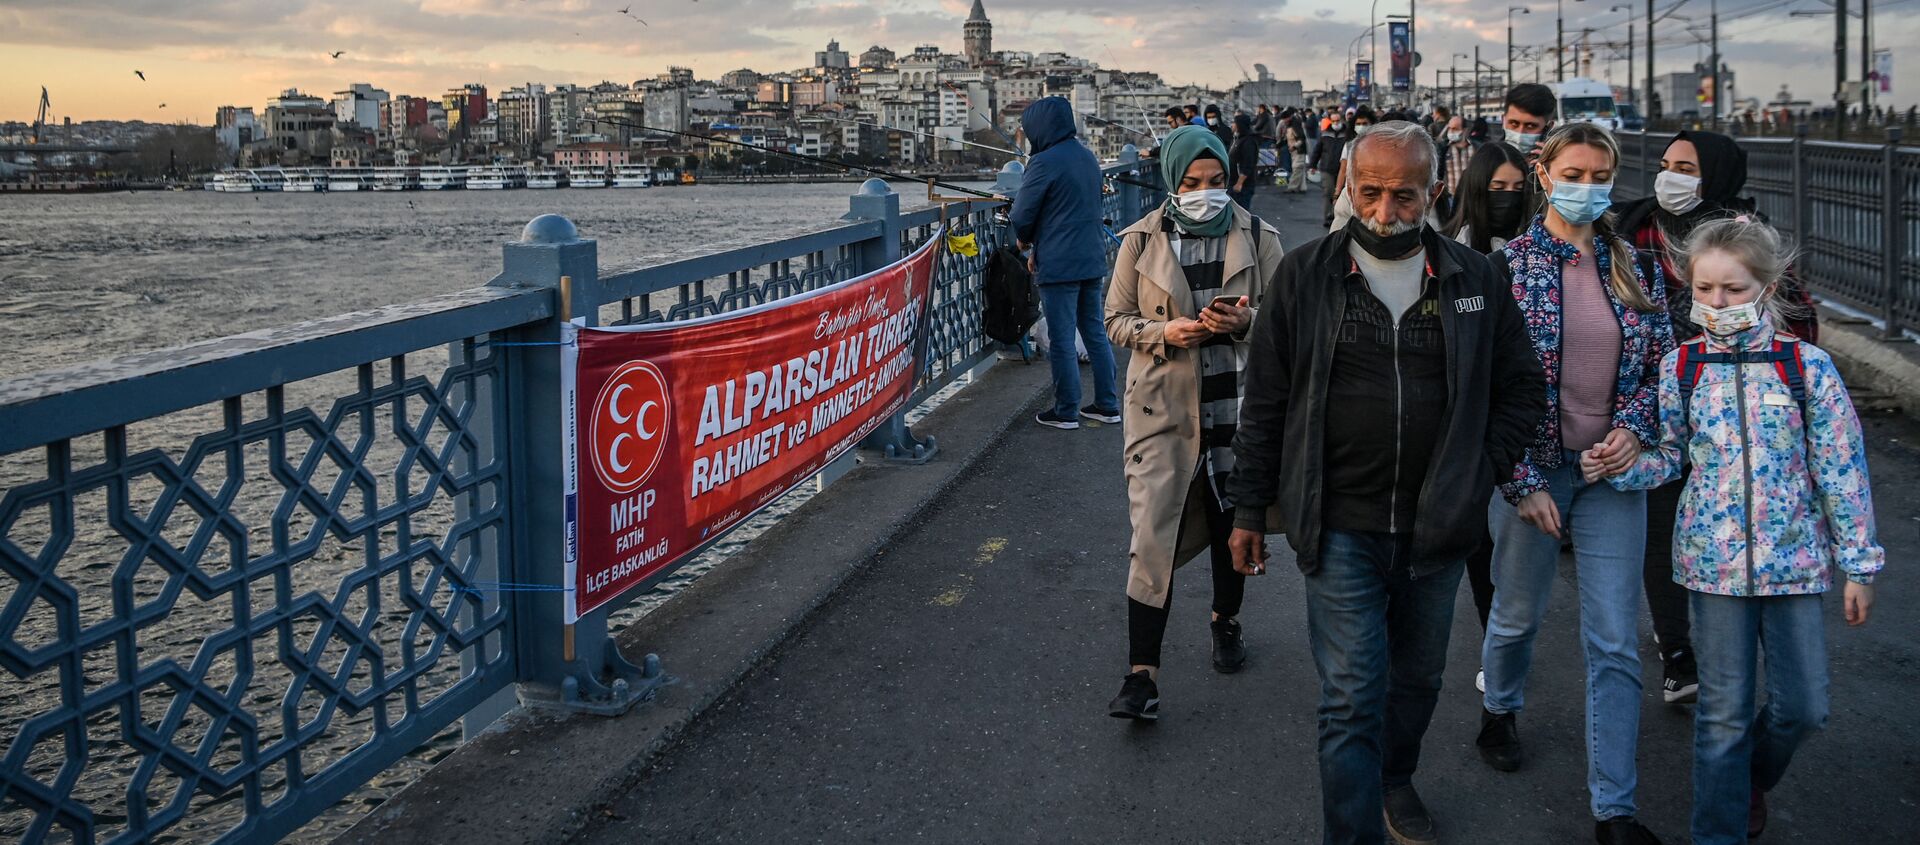 Люди гуляют по Галатскому мосту в Стамбуле, фото из архива - Sputnik Azərbaycan, 1920, 08.04.2021